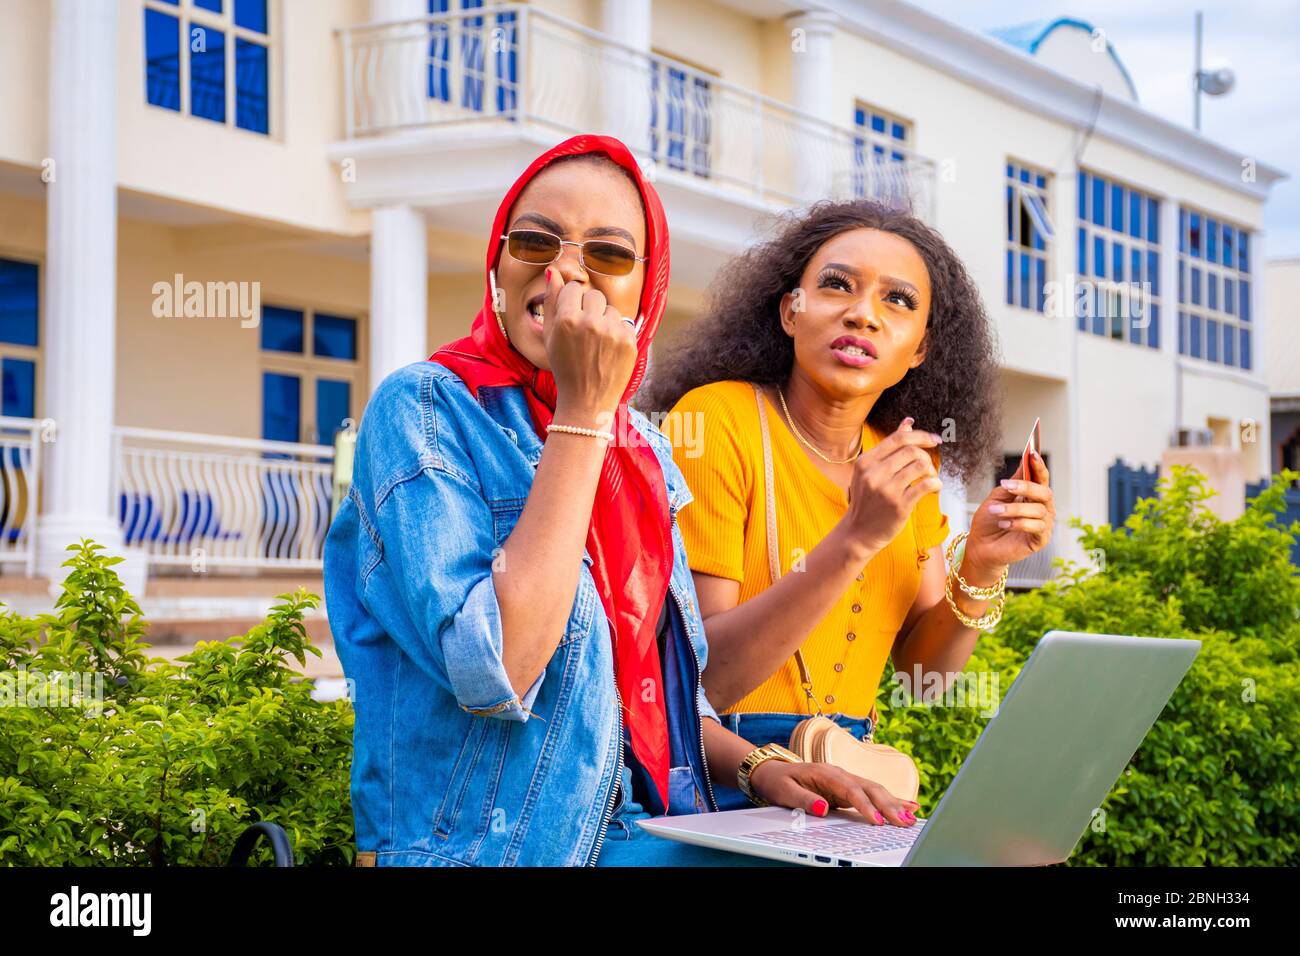 Zwei afrikanische Frauen sitzen draußen in einem Park und kaufen zusammen mit einem Laptop ein, sie sehen erschrocken aus Stockfoto